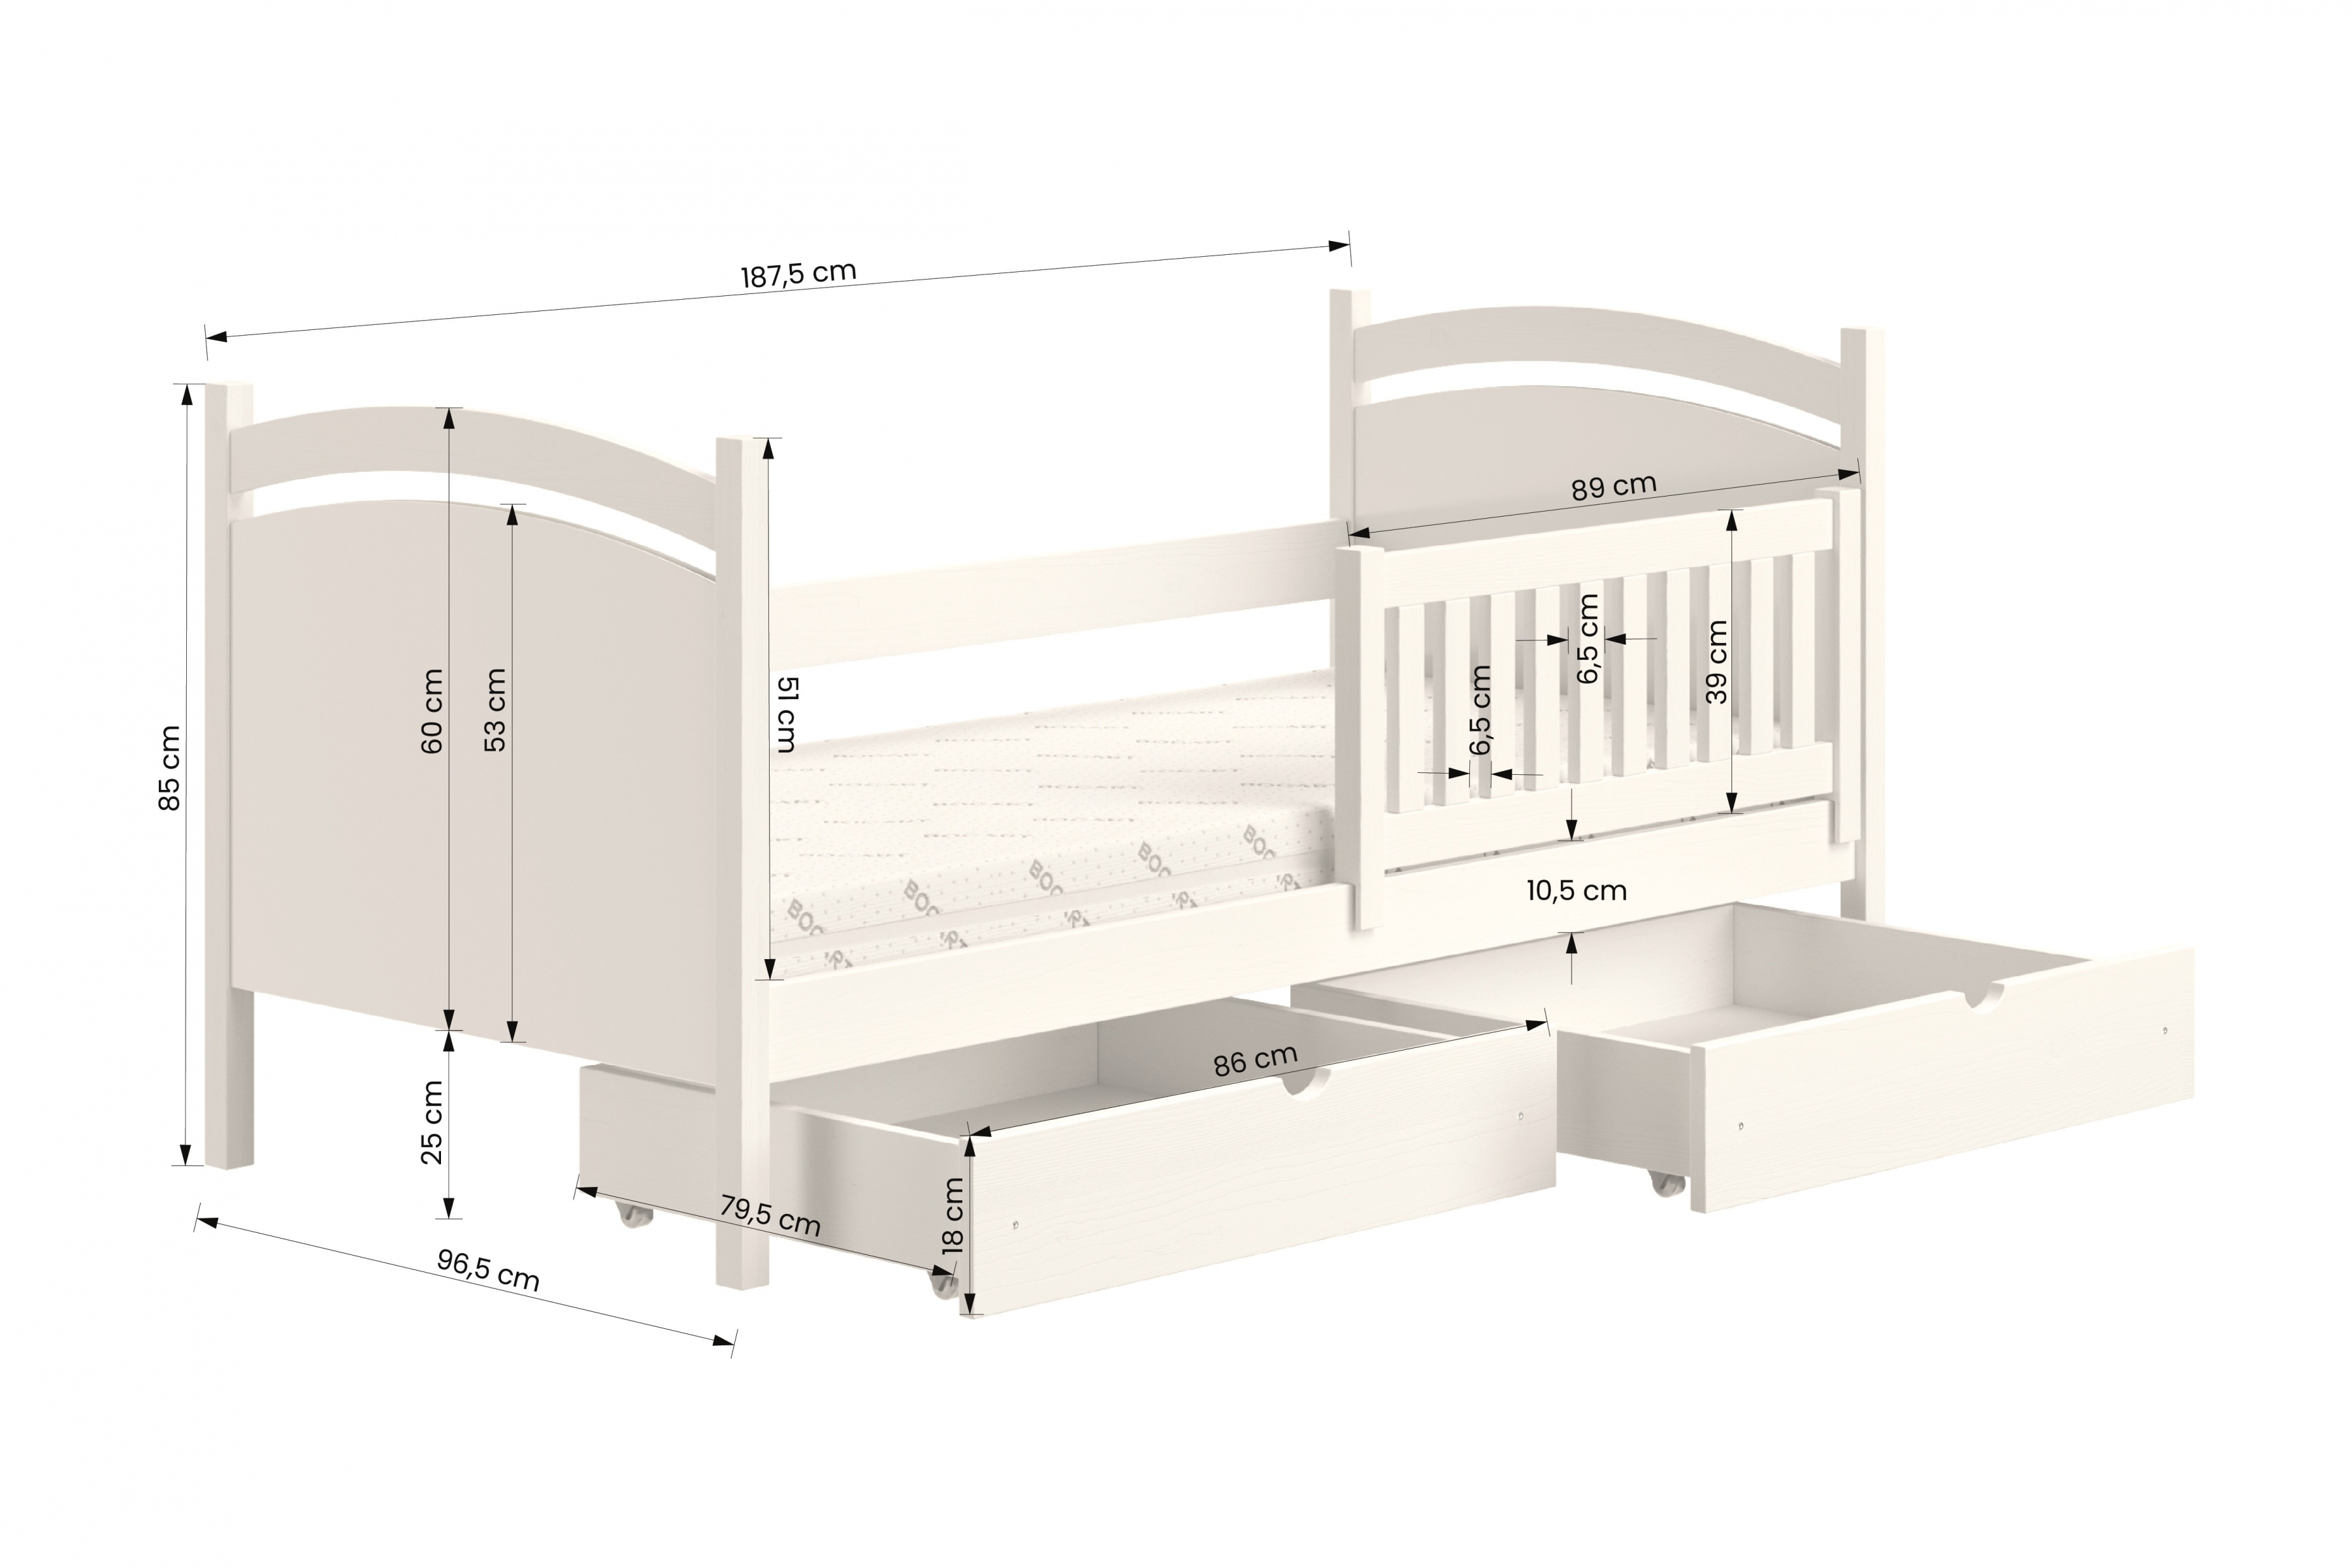 Detská posteľ s tabuľou Amely - Farba Biely, rozmer 90x180  Posteľ dzieciece z tablica suchoscieralna Amely - Rozmery